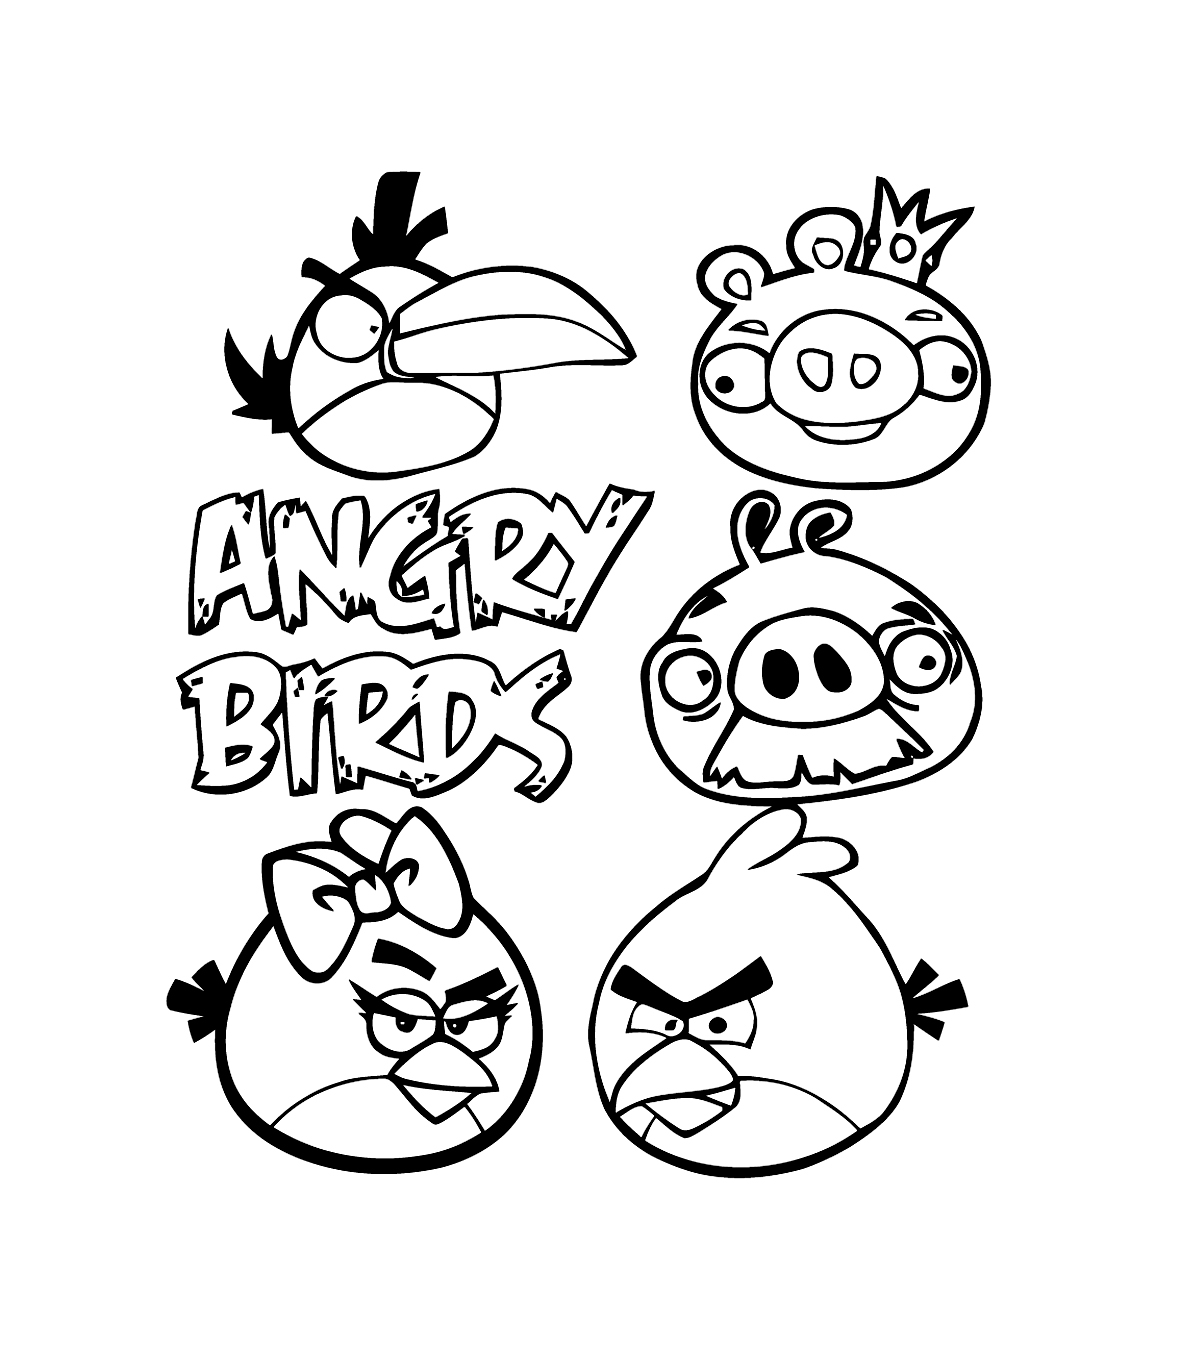 Image de Angry birds à imprimer et à colorier